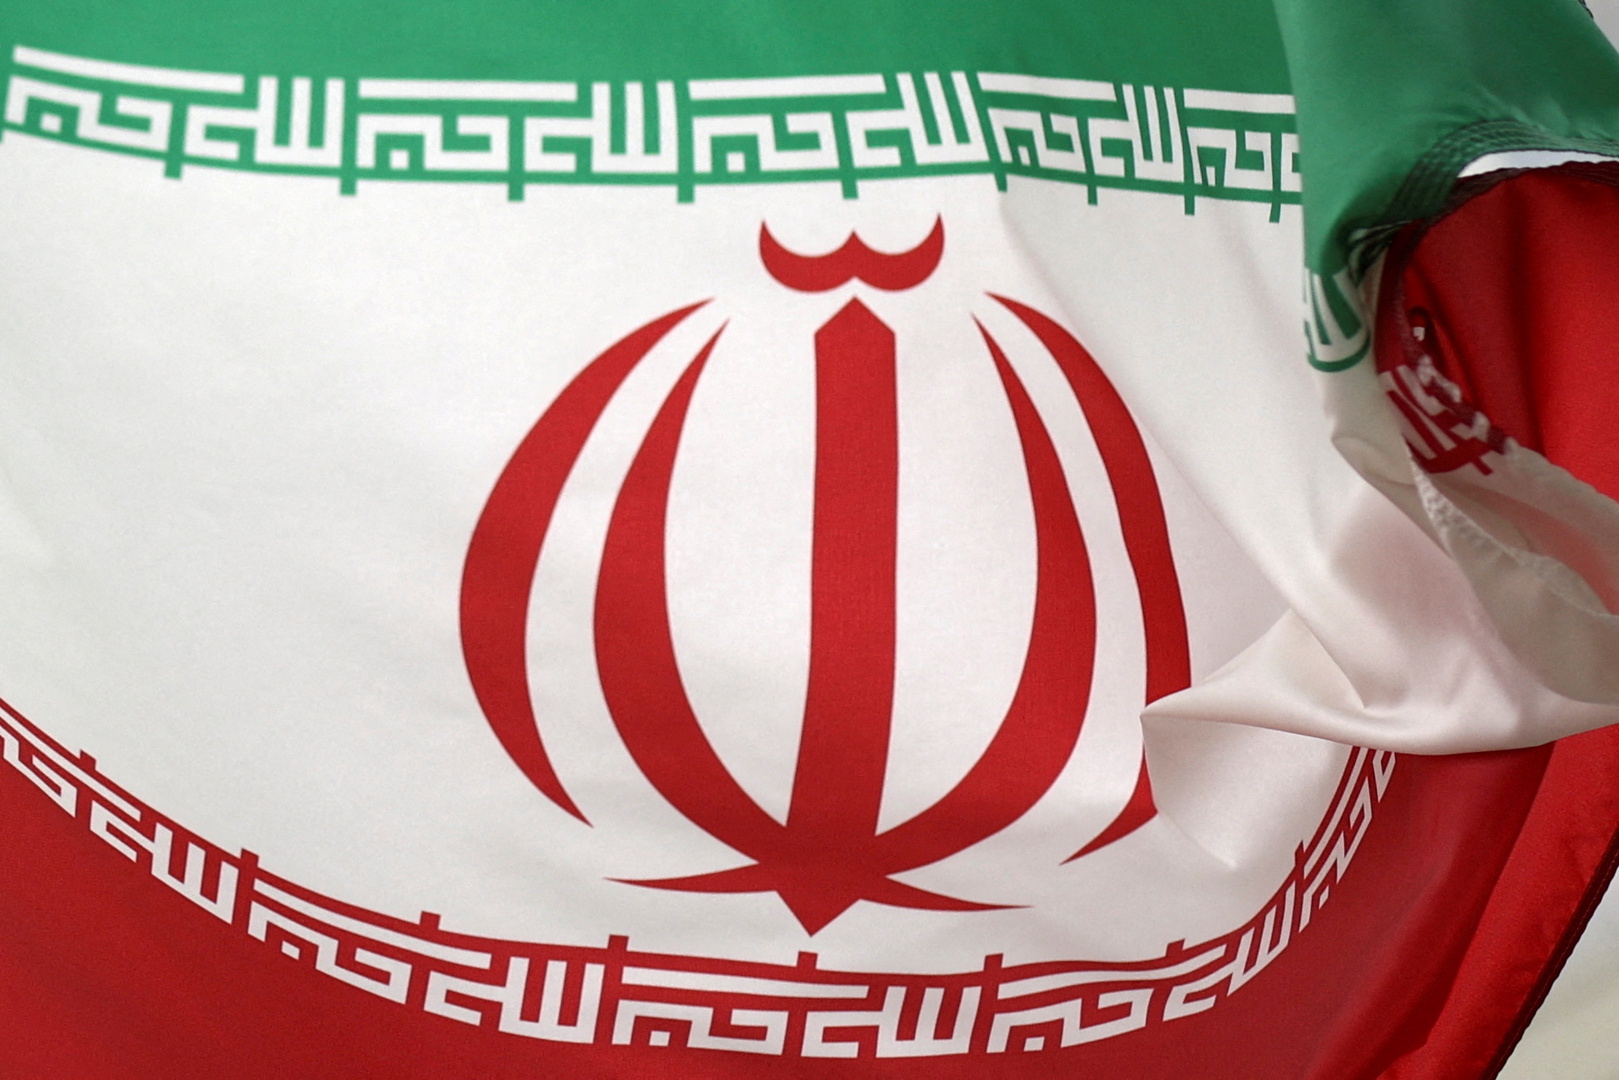 طهران: تبادلنا بعض النصوص غير الرسمية مع واشنطن بشأن الاتفاق النووي